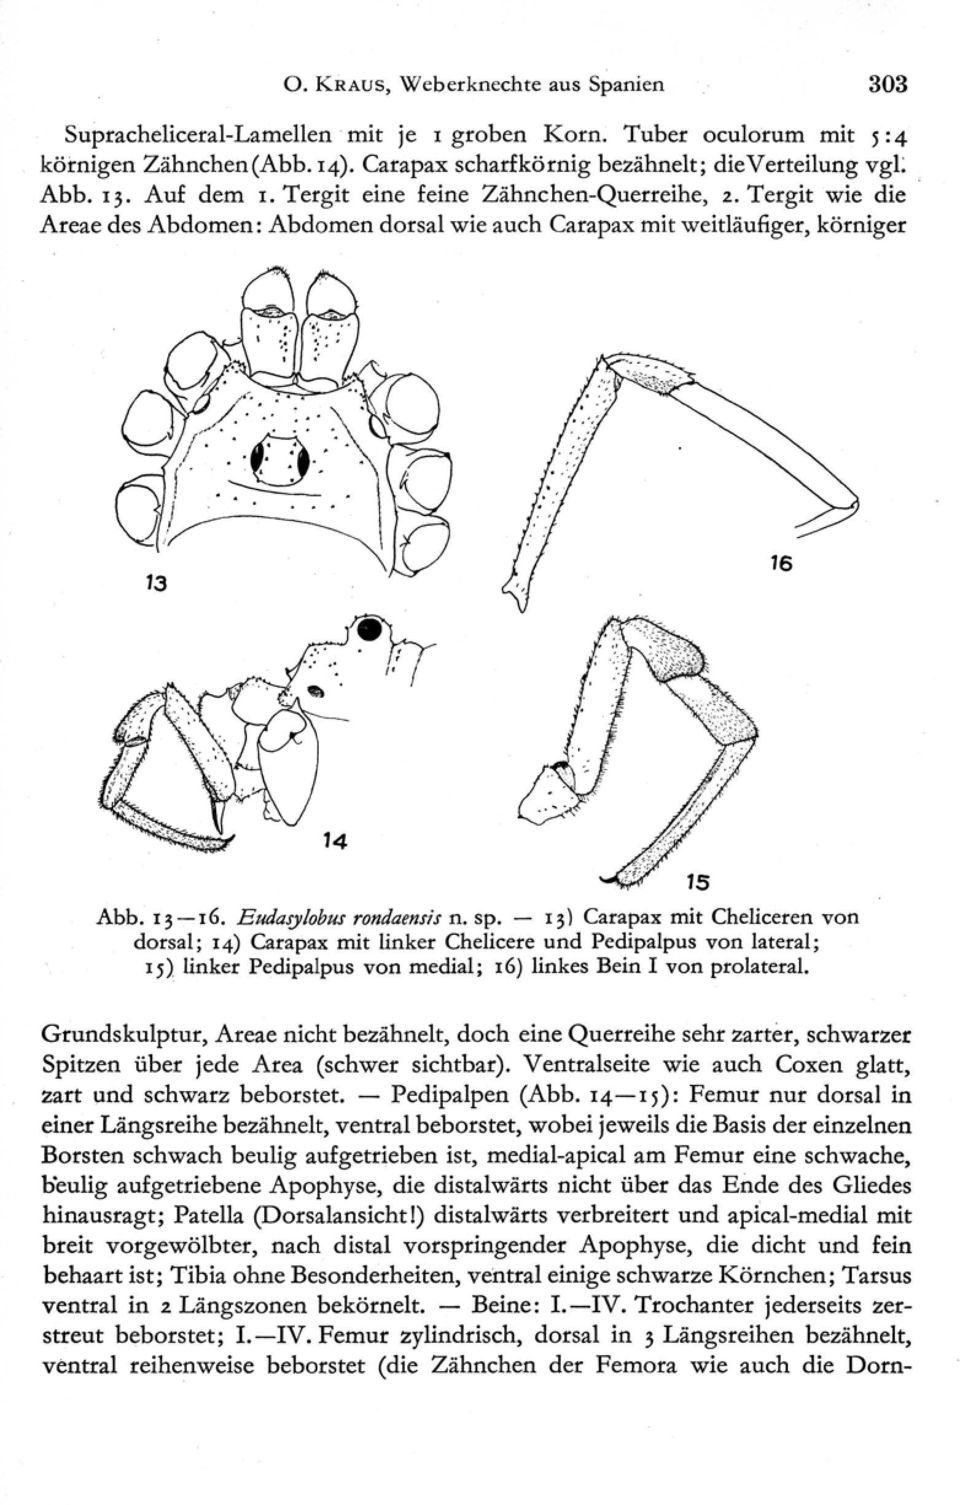 13) Carapax mit Cheliceren von dorsal ; 14) Carapax mit linker Chelicere und Pedipalpus von lateral ; 15) linker Pedipalpus von medial; 16) linkes Bein I von prolateral.